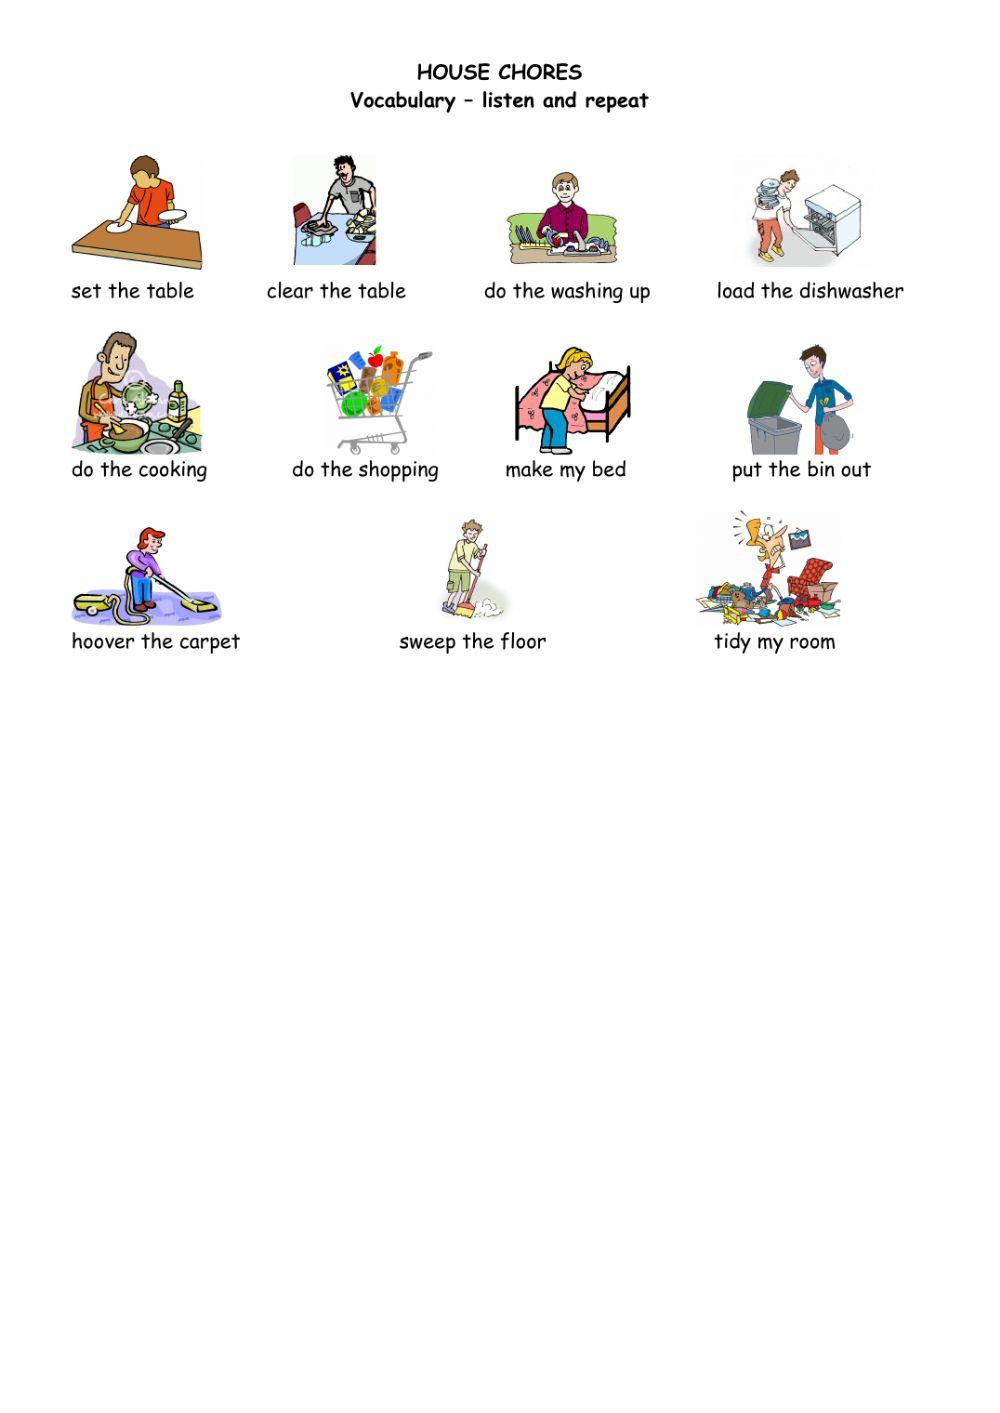 House chores - vocabulary sheet